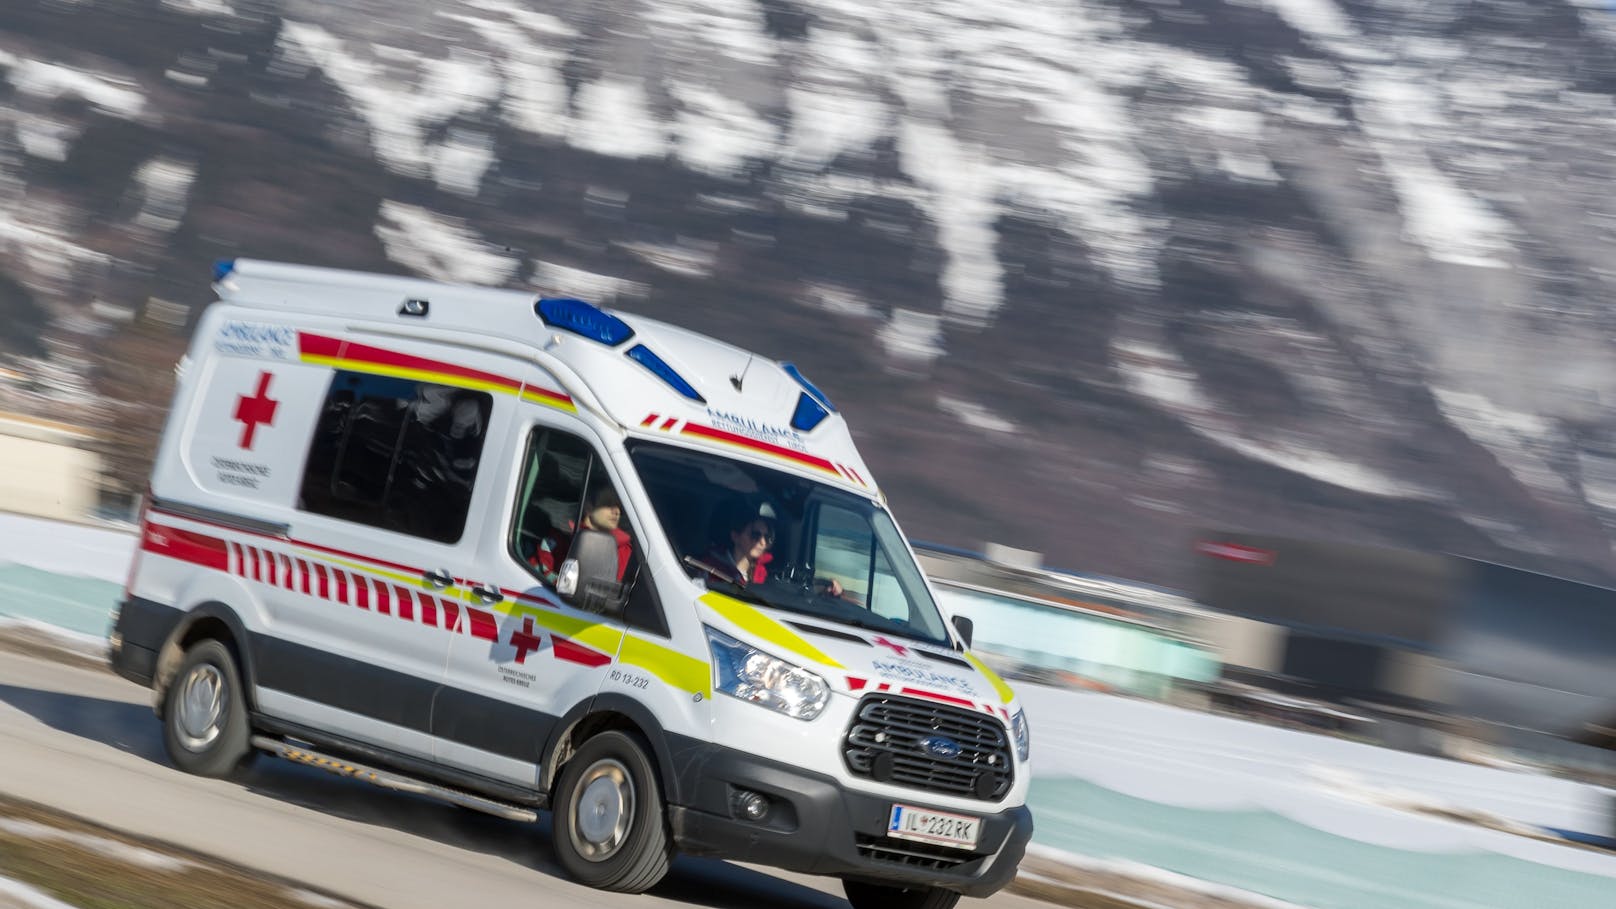 Straße in Tirol nach schwerem Auto-Unfall gesperrt